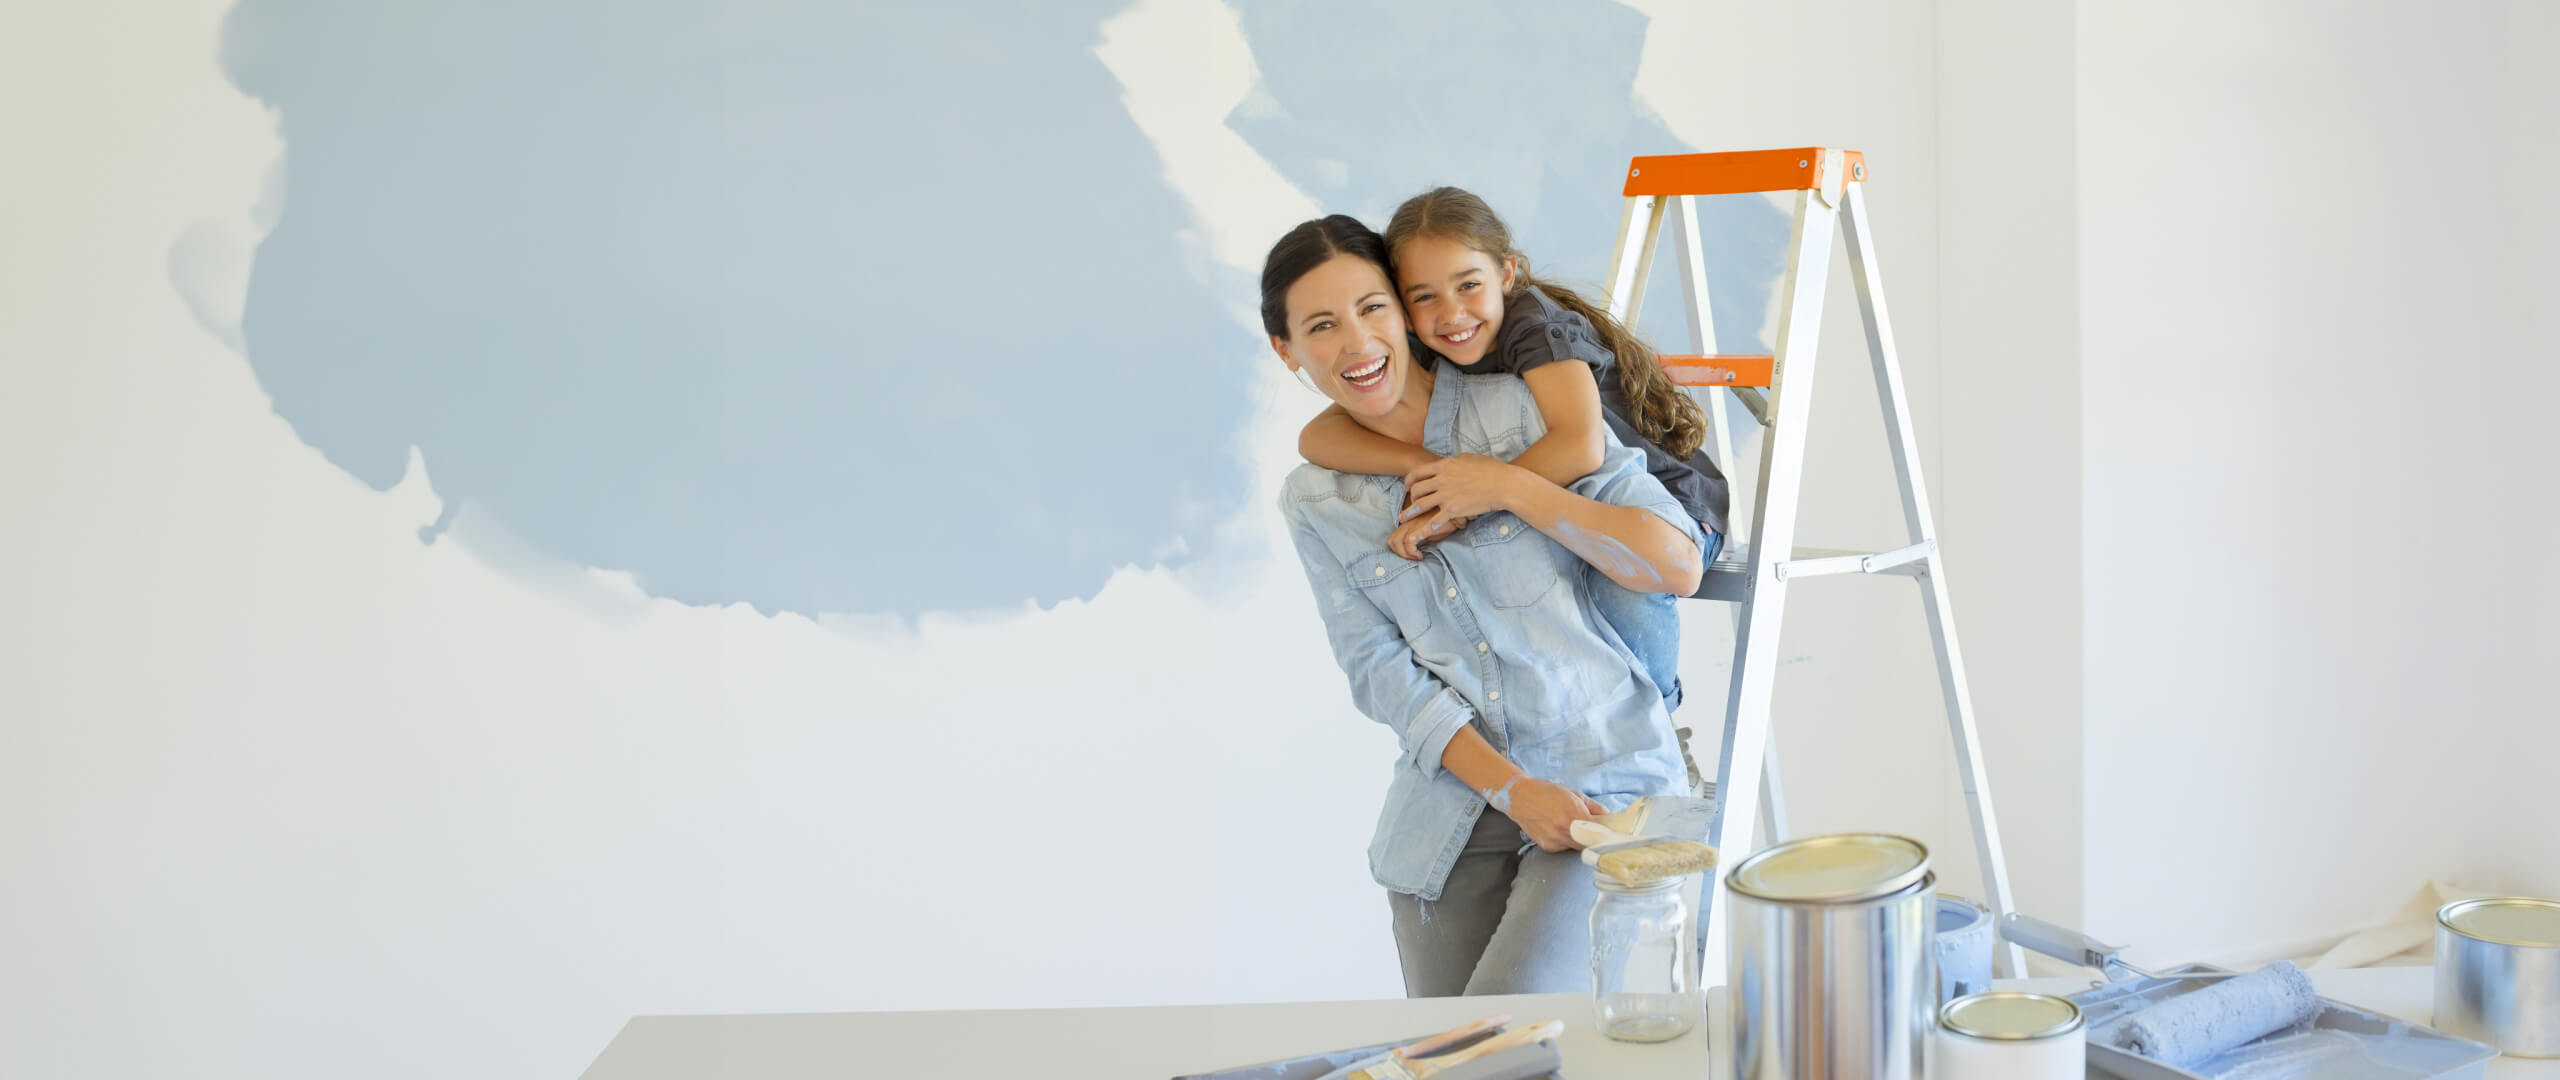 imagem de mãe e filha sorridentes enquanto pintam uma divisão da casa